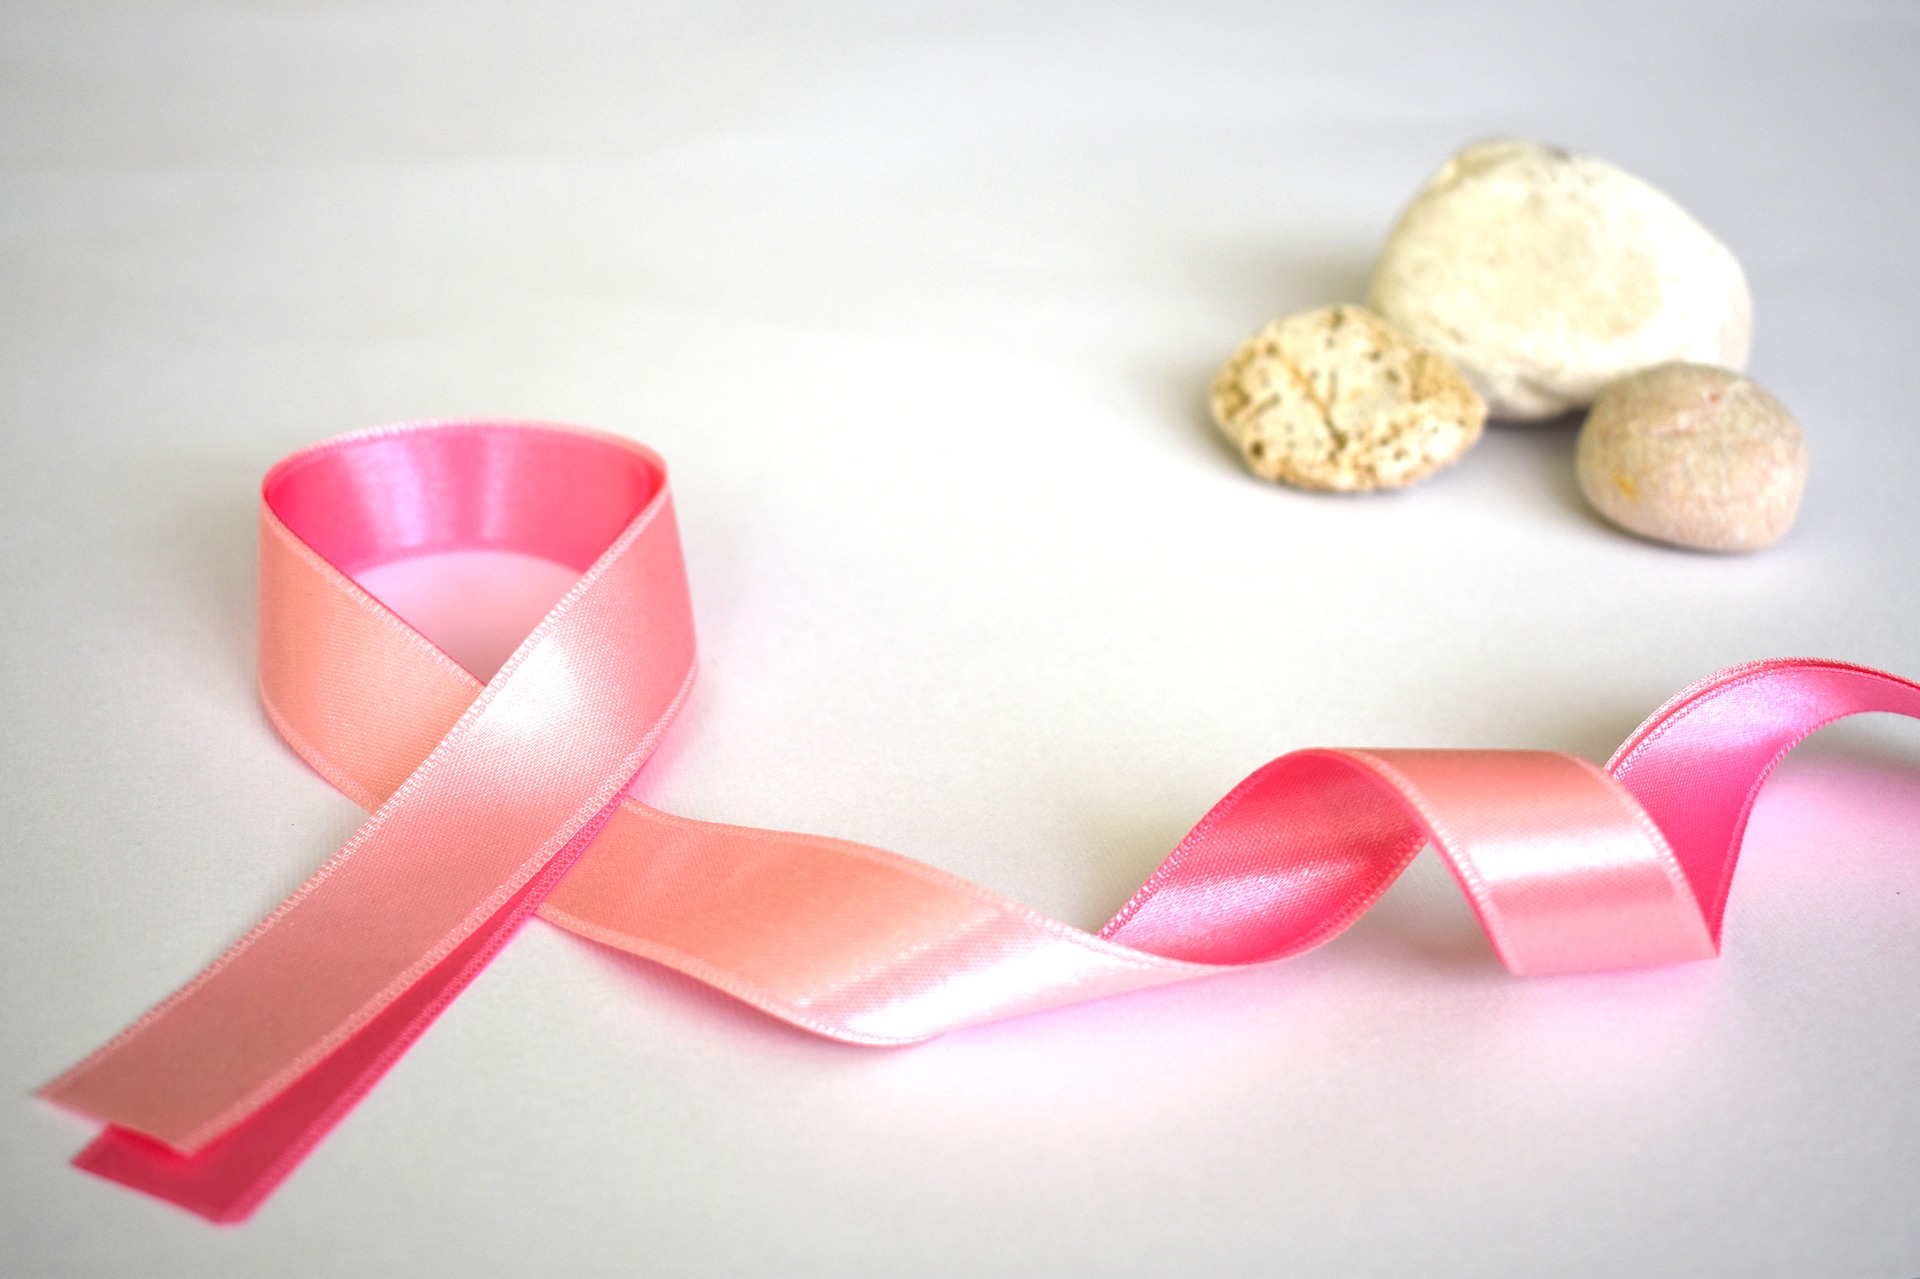 Bezpłatne badania mammograficzne w ramach programu profilaktyki raka piersi 3